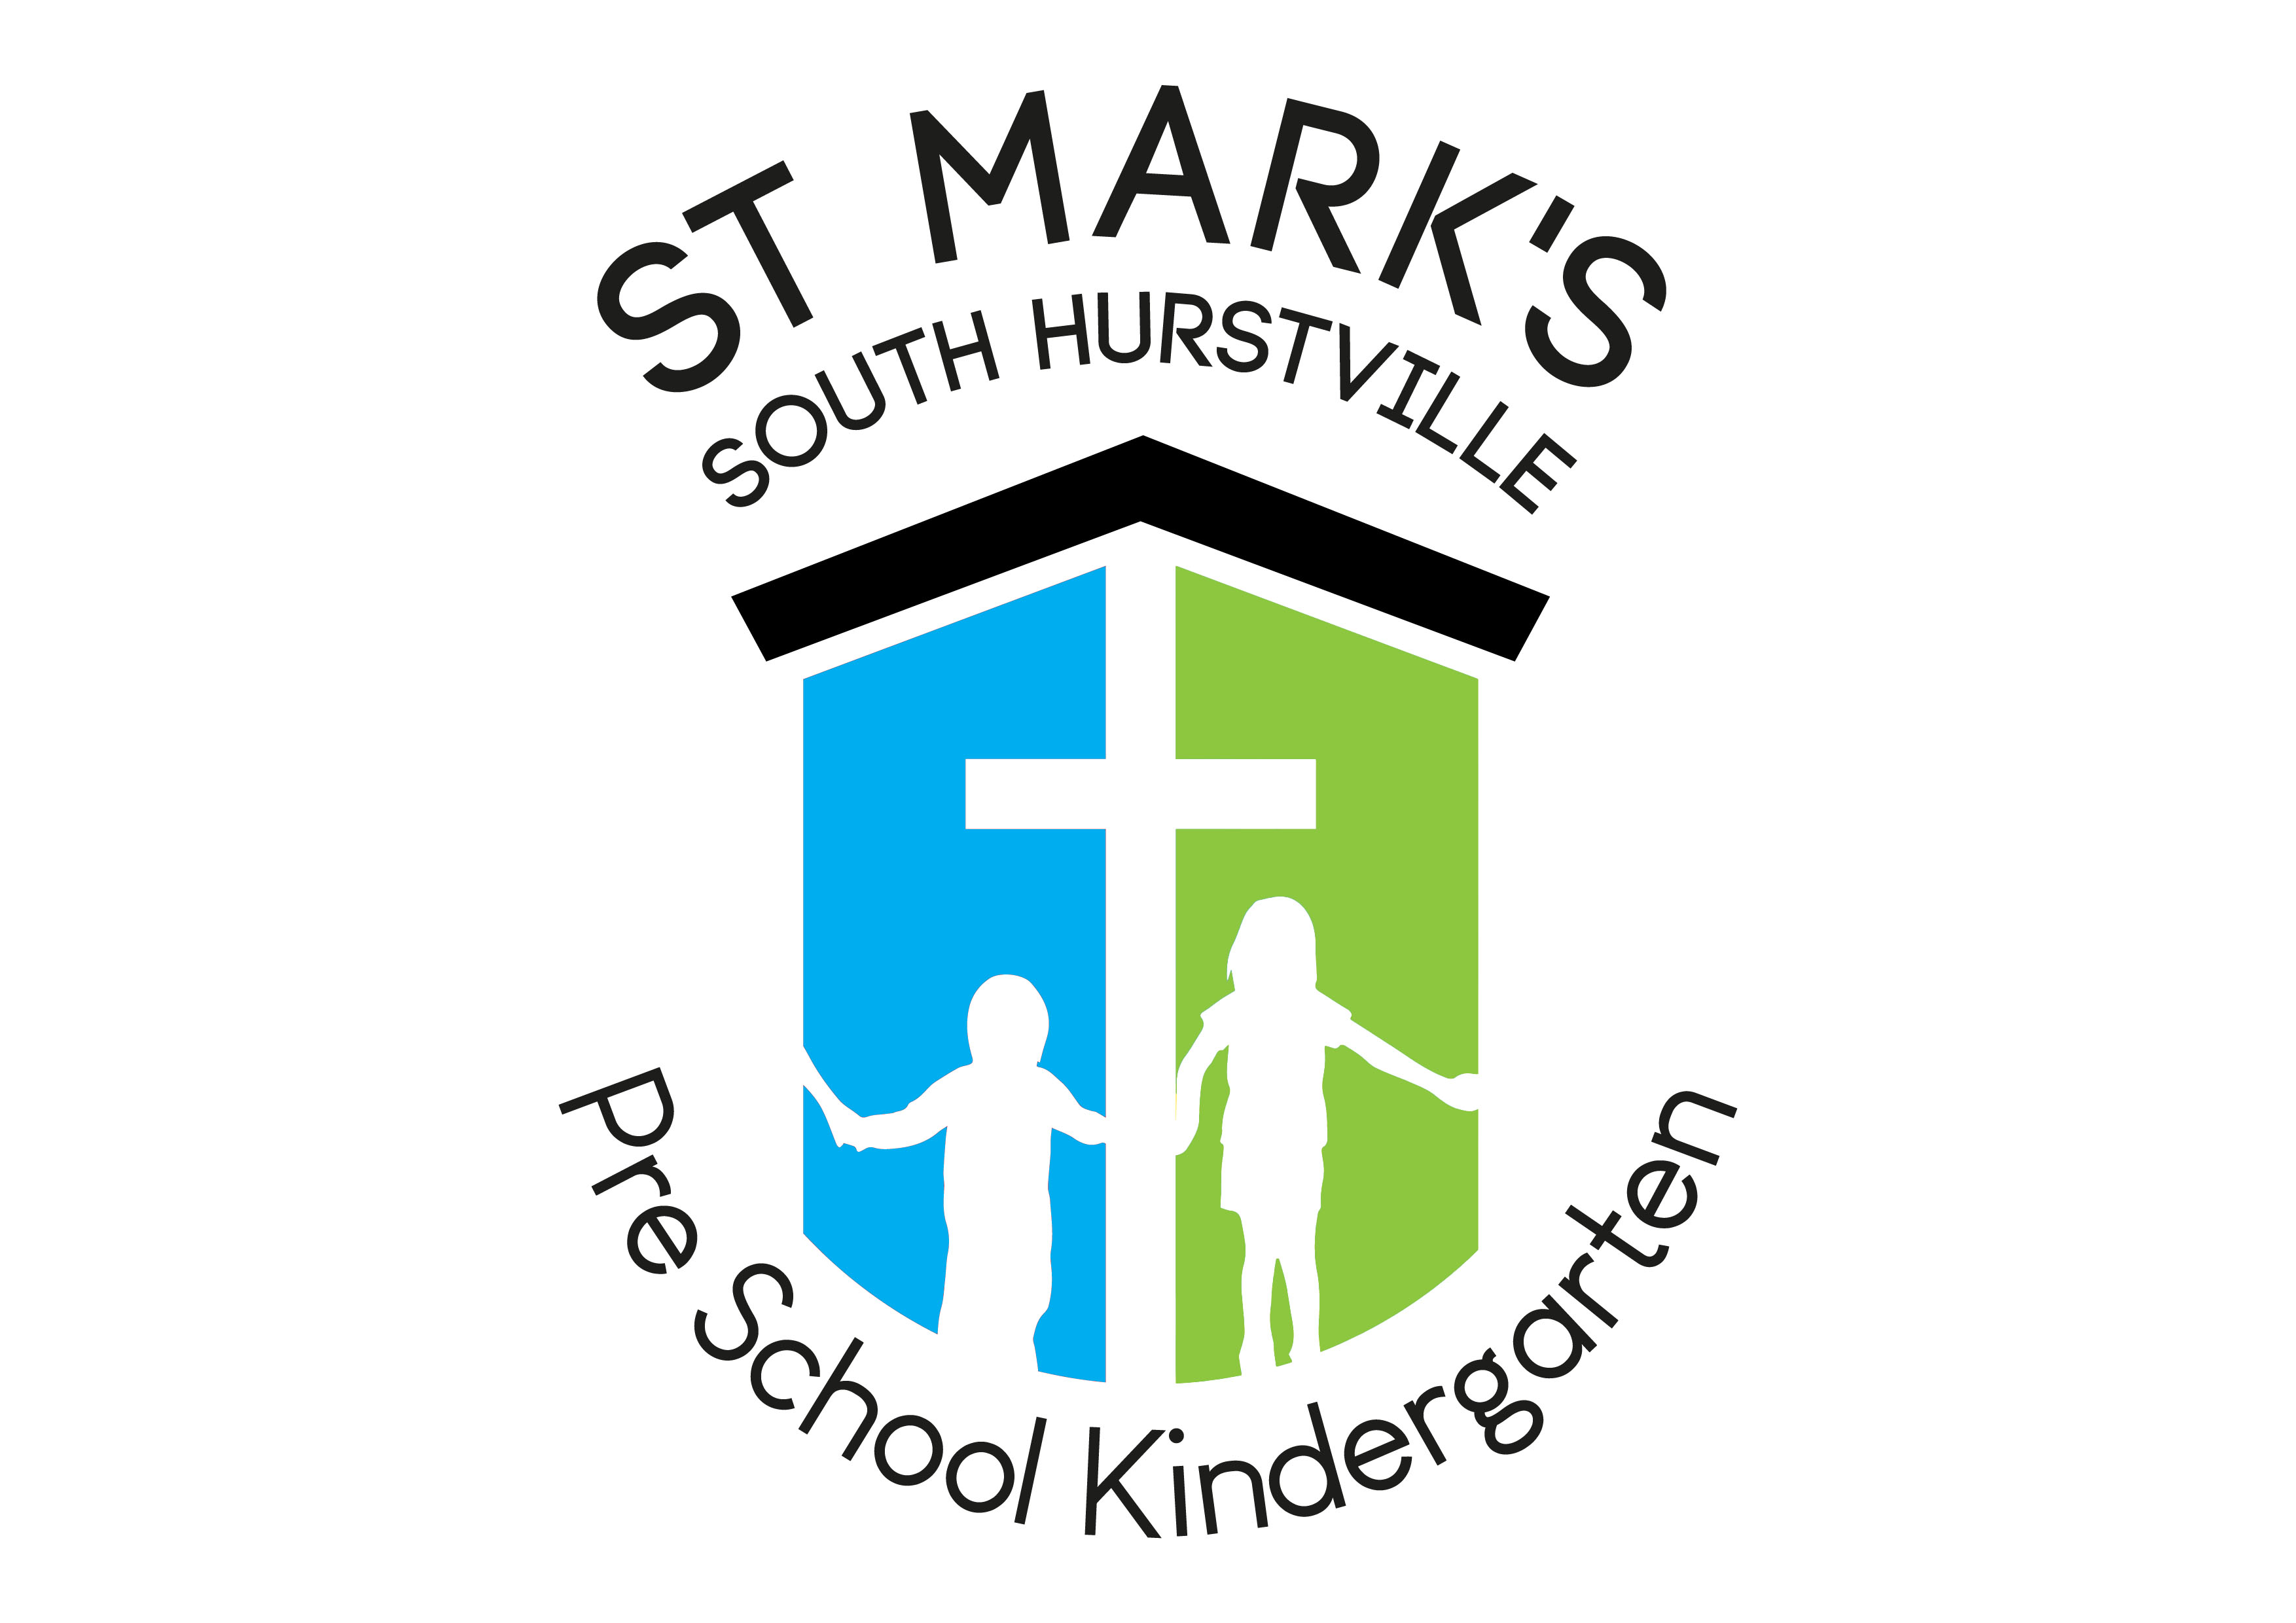 Welcome to St Mark’s Preschool Kindergarten